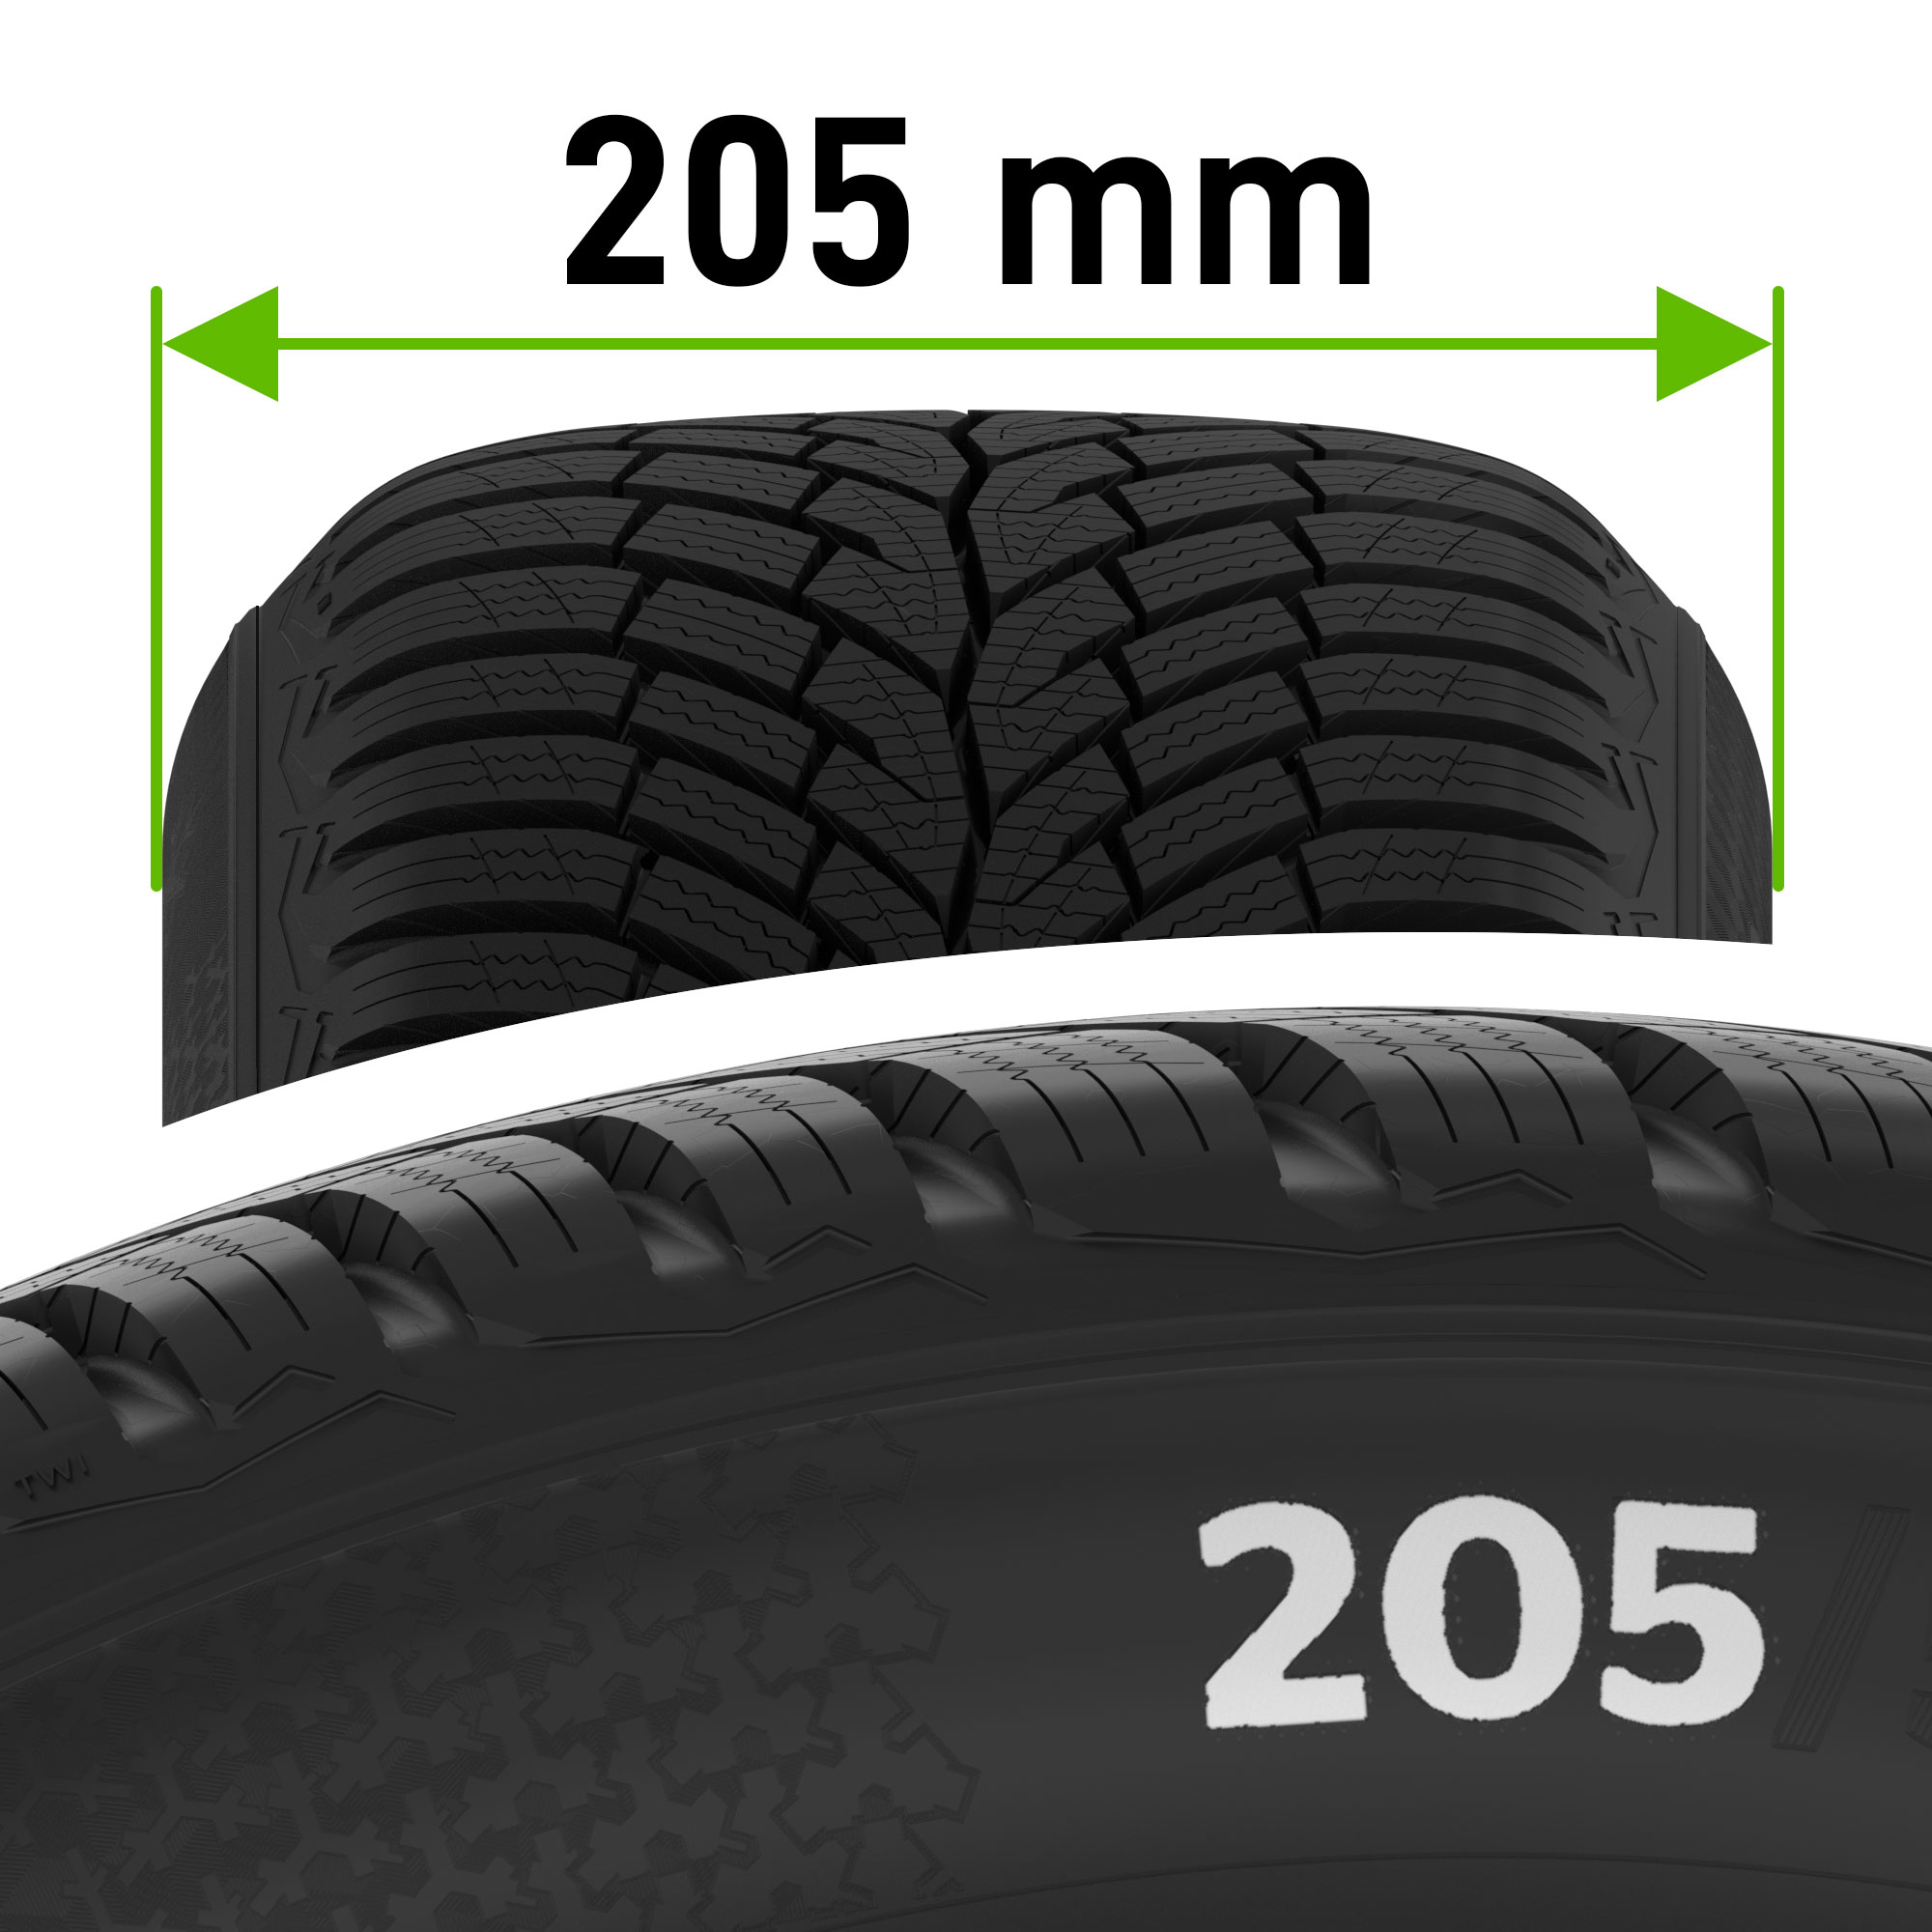 Largeur des pneus